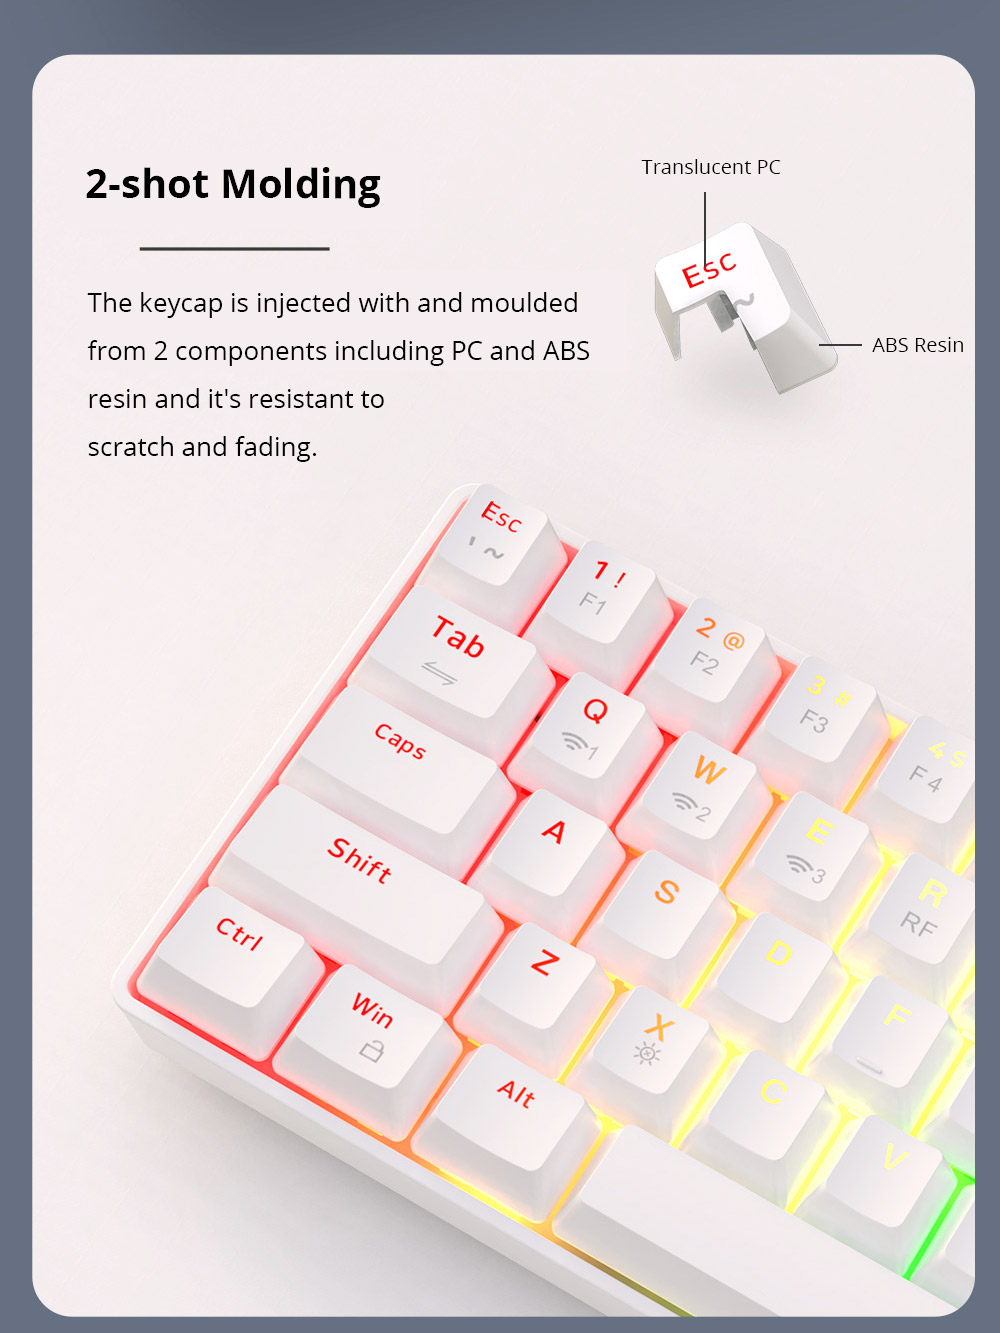 Ajazz K685T RGB Hot-swappable 68 teclas do teclado mecânico, com fio + Bluetooth + conexão sem fio de 2.4 GHz, interruptor vermelho - branco